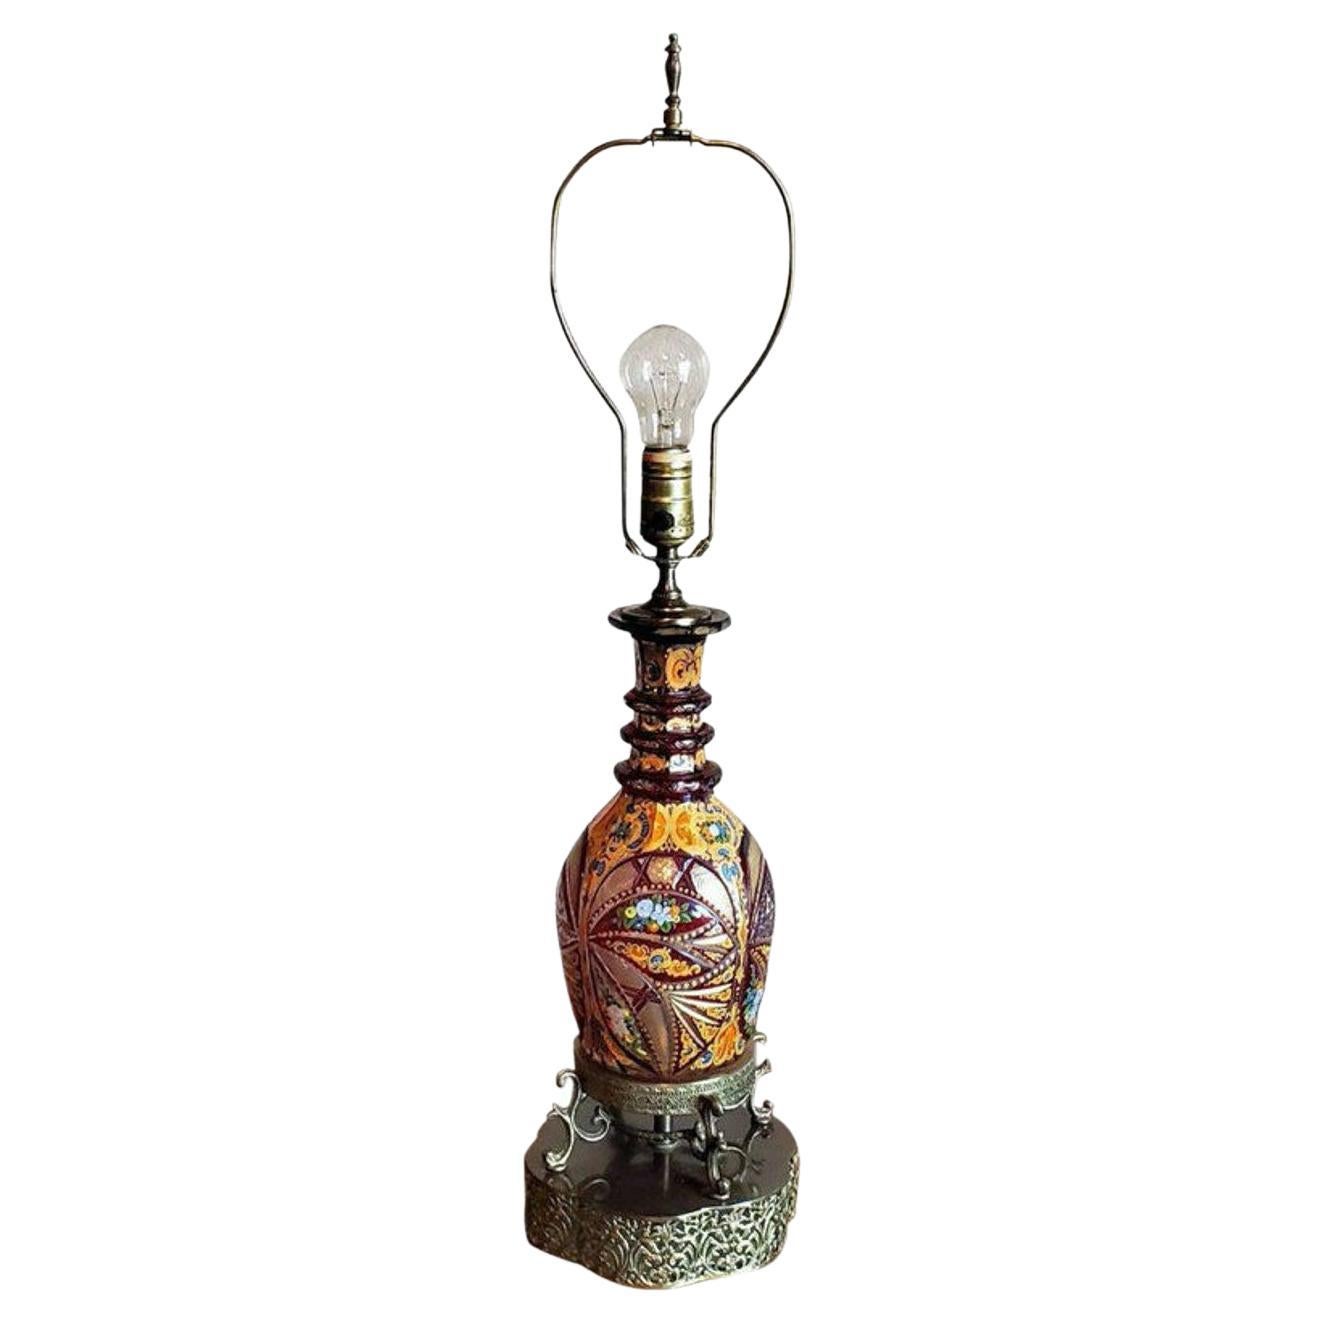 Böhmisches Kunstglas-Dekanter des 19. Jahrhunderts, jetzt als Lampe gestaltet